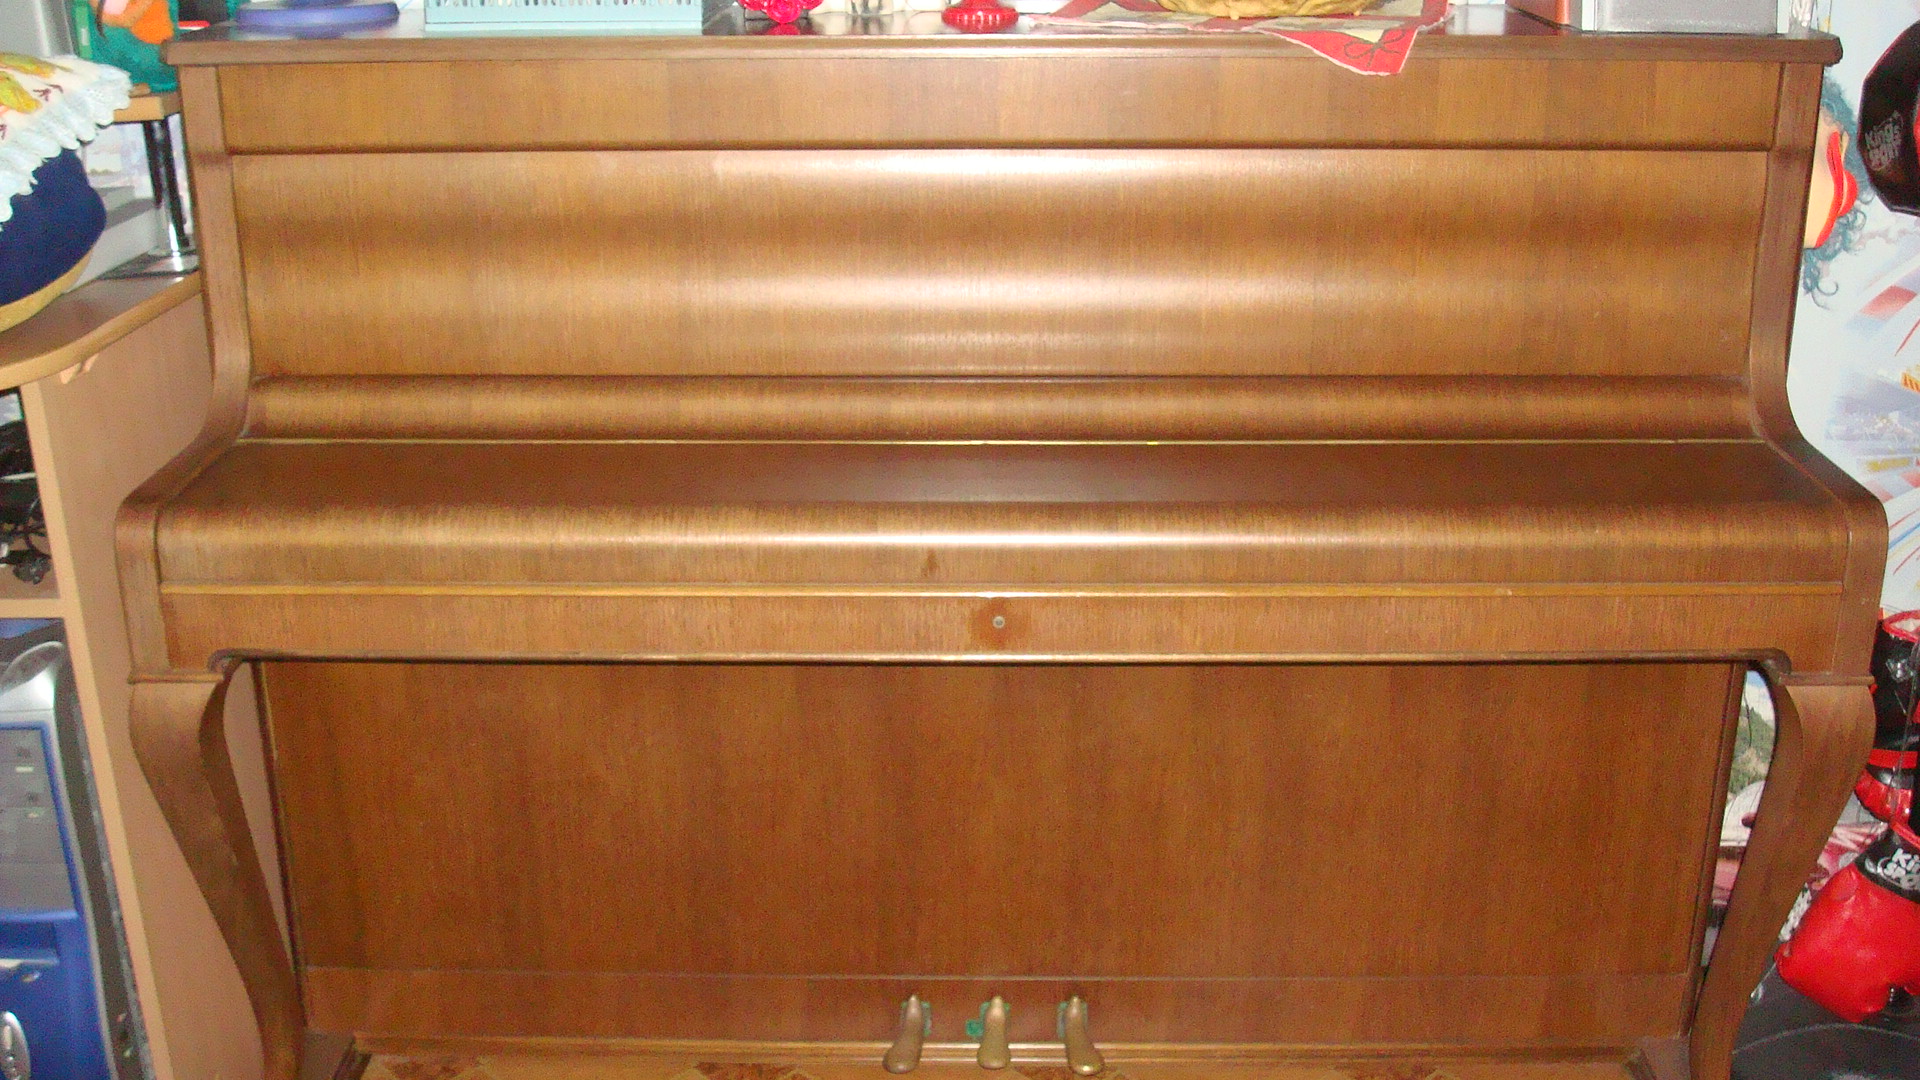 Продаётся фортепиано (кабинетный рояль) Wainbach производство: Чехословакия, в отличном состоянии, цвет светло-коричневый.<br />Цена: 16000 грн.